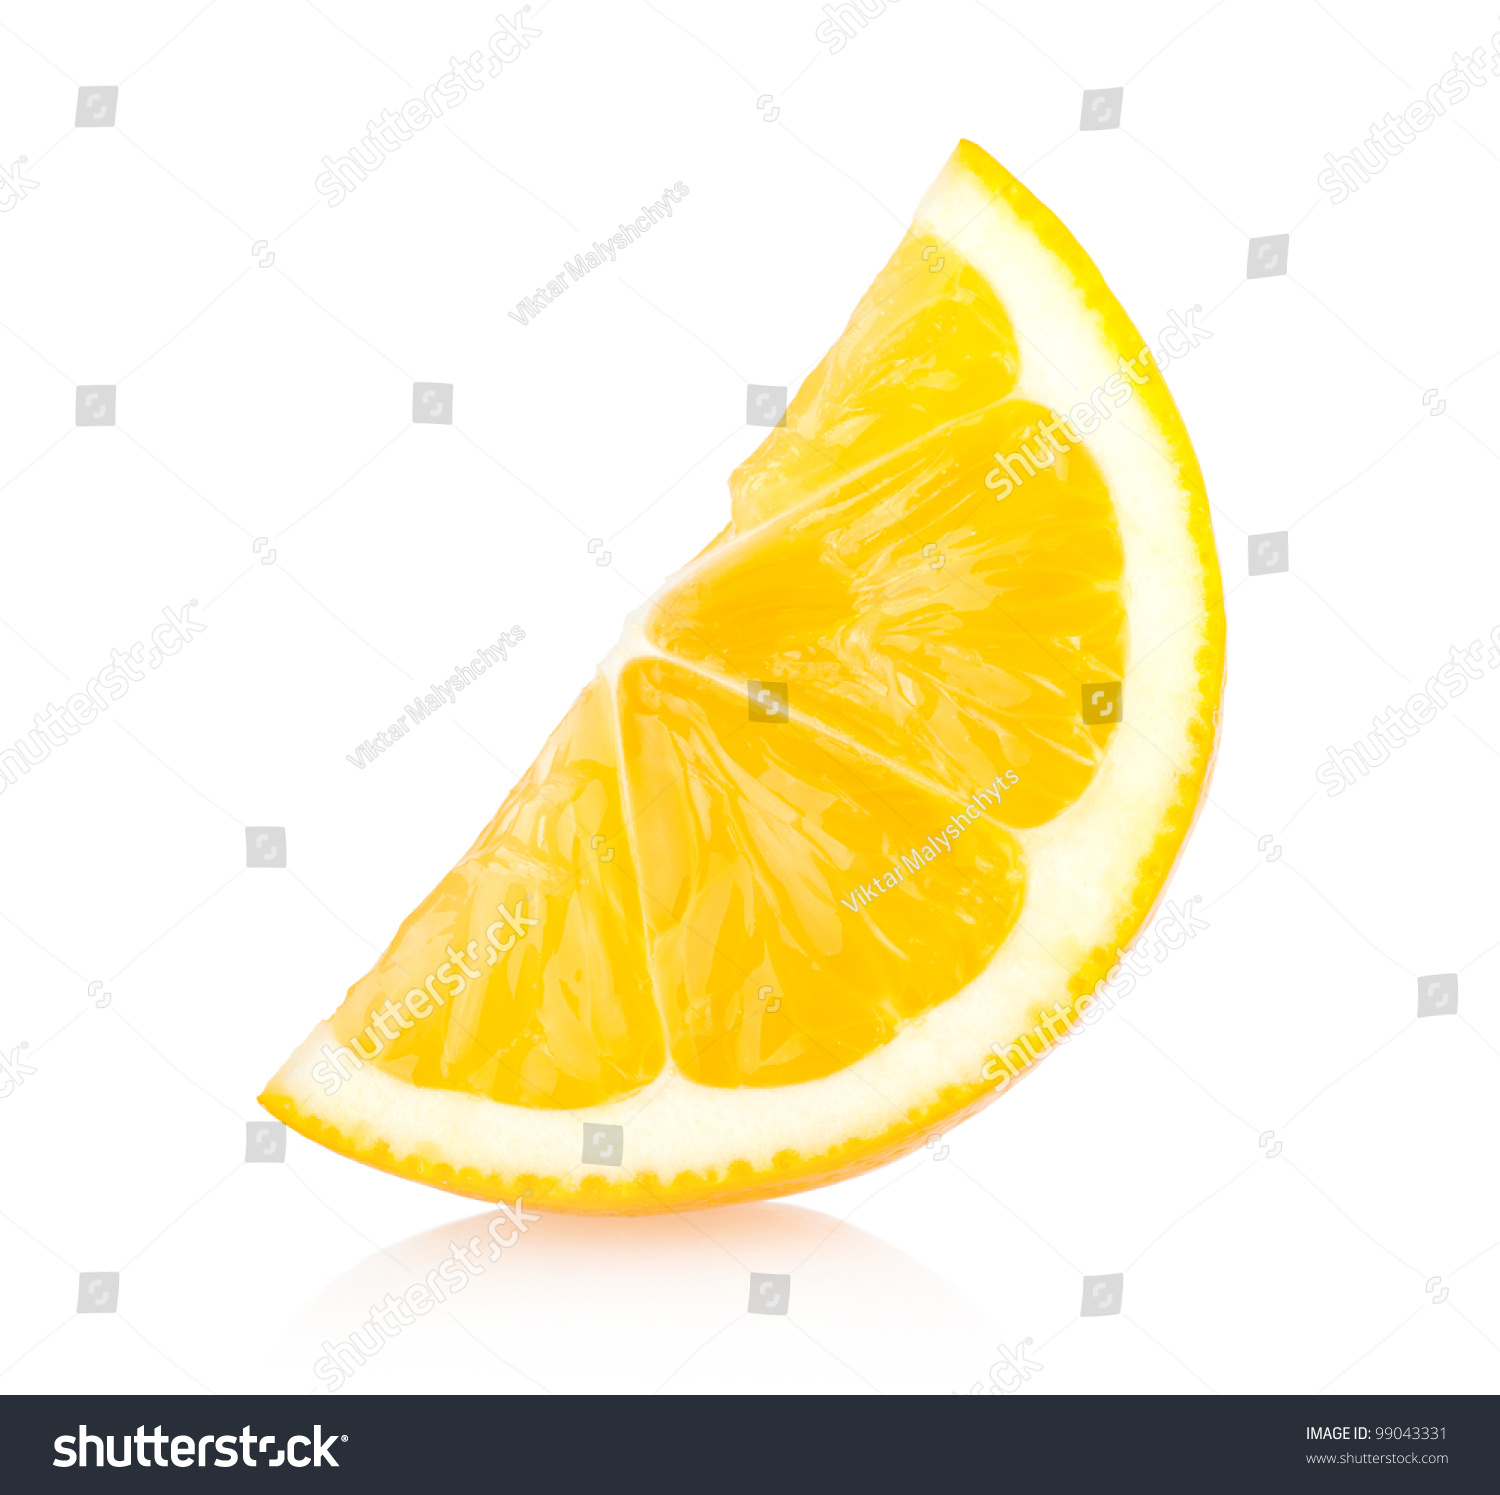 Lemon Slice Stock Photo 99043331 : Shutterstock